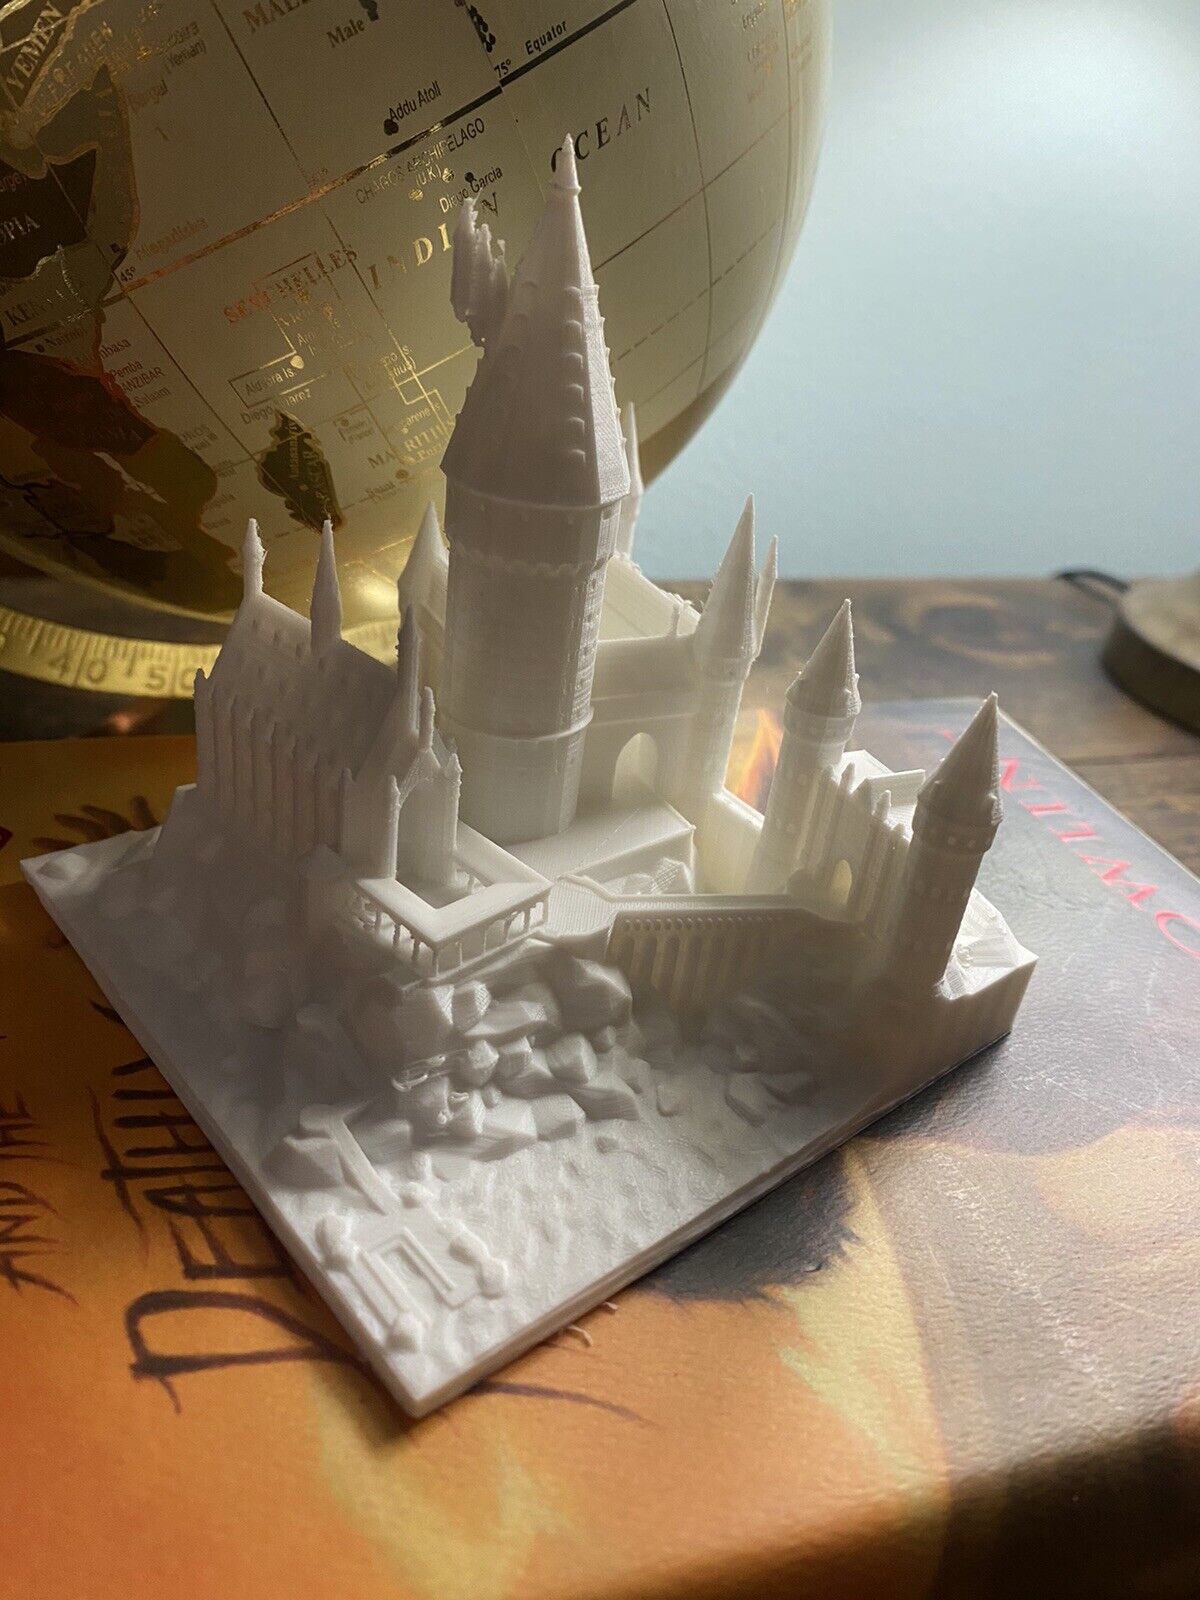 Hogwarts Castle model, Harry Potter Collectible, Castle Miniature, 4x4x4